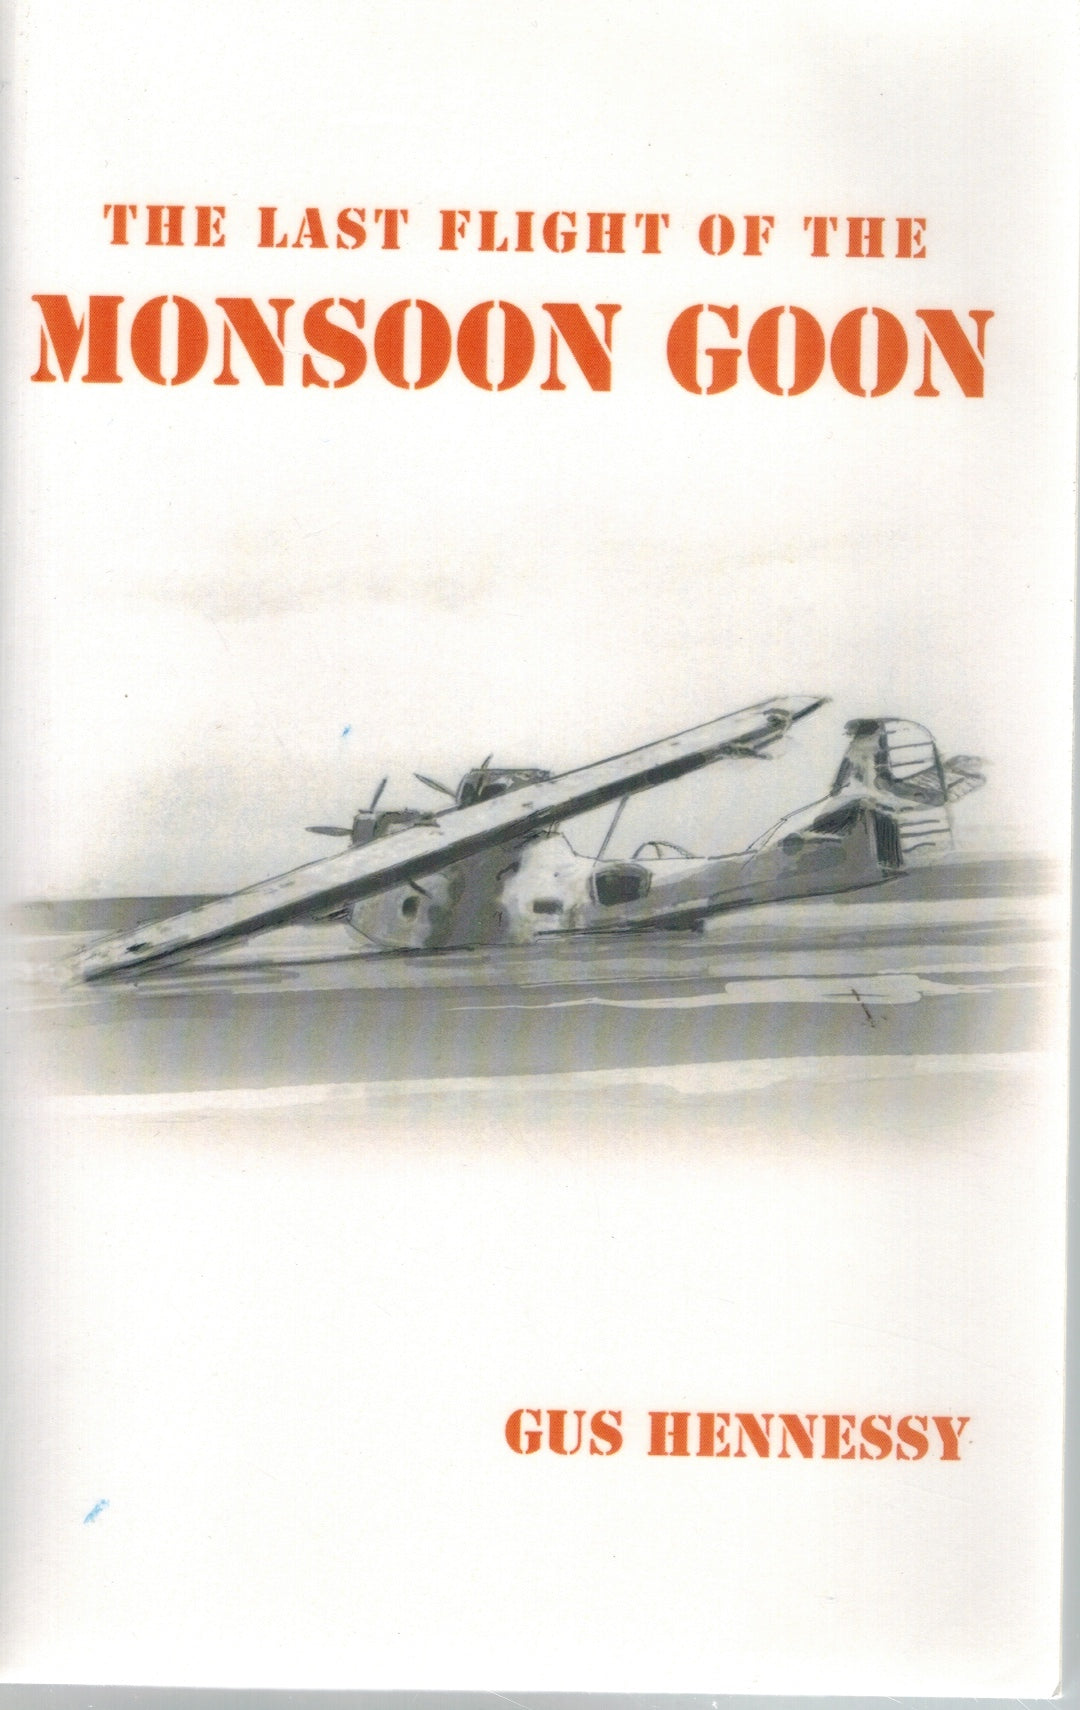 THE LAST FLIGHT OF THE MONSOON GOON